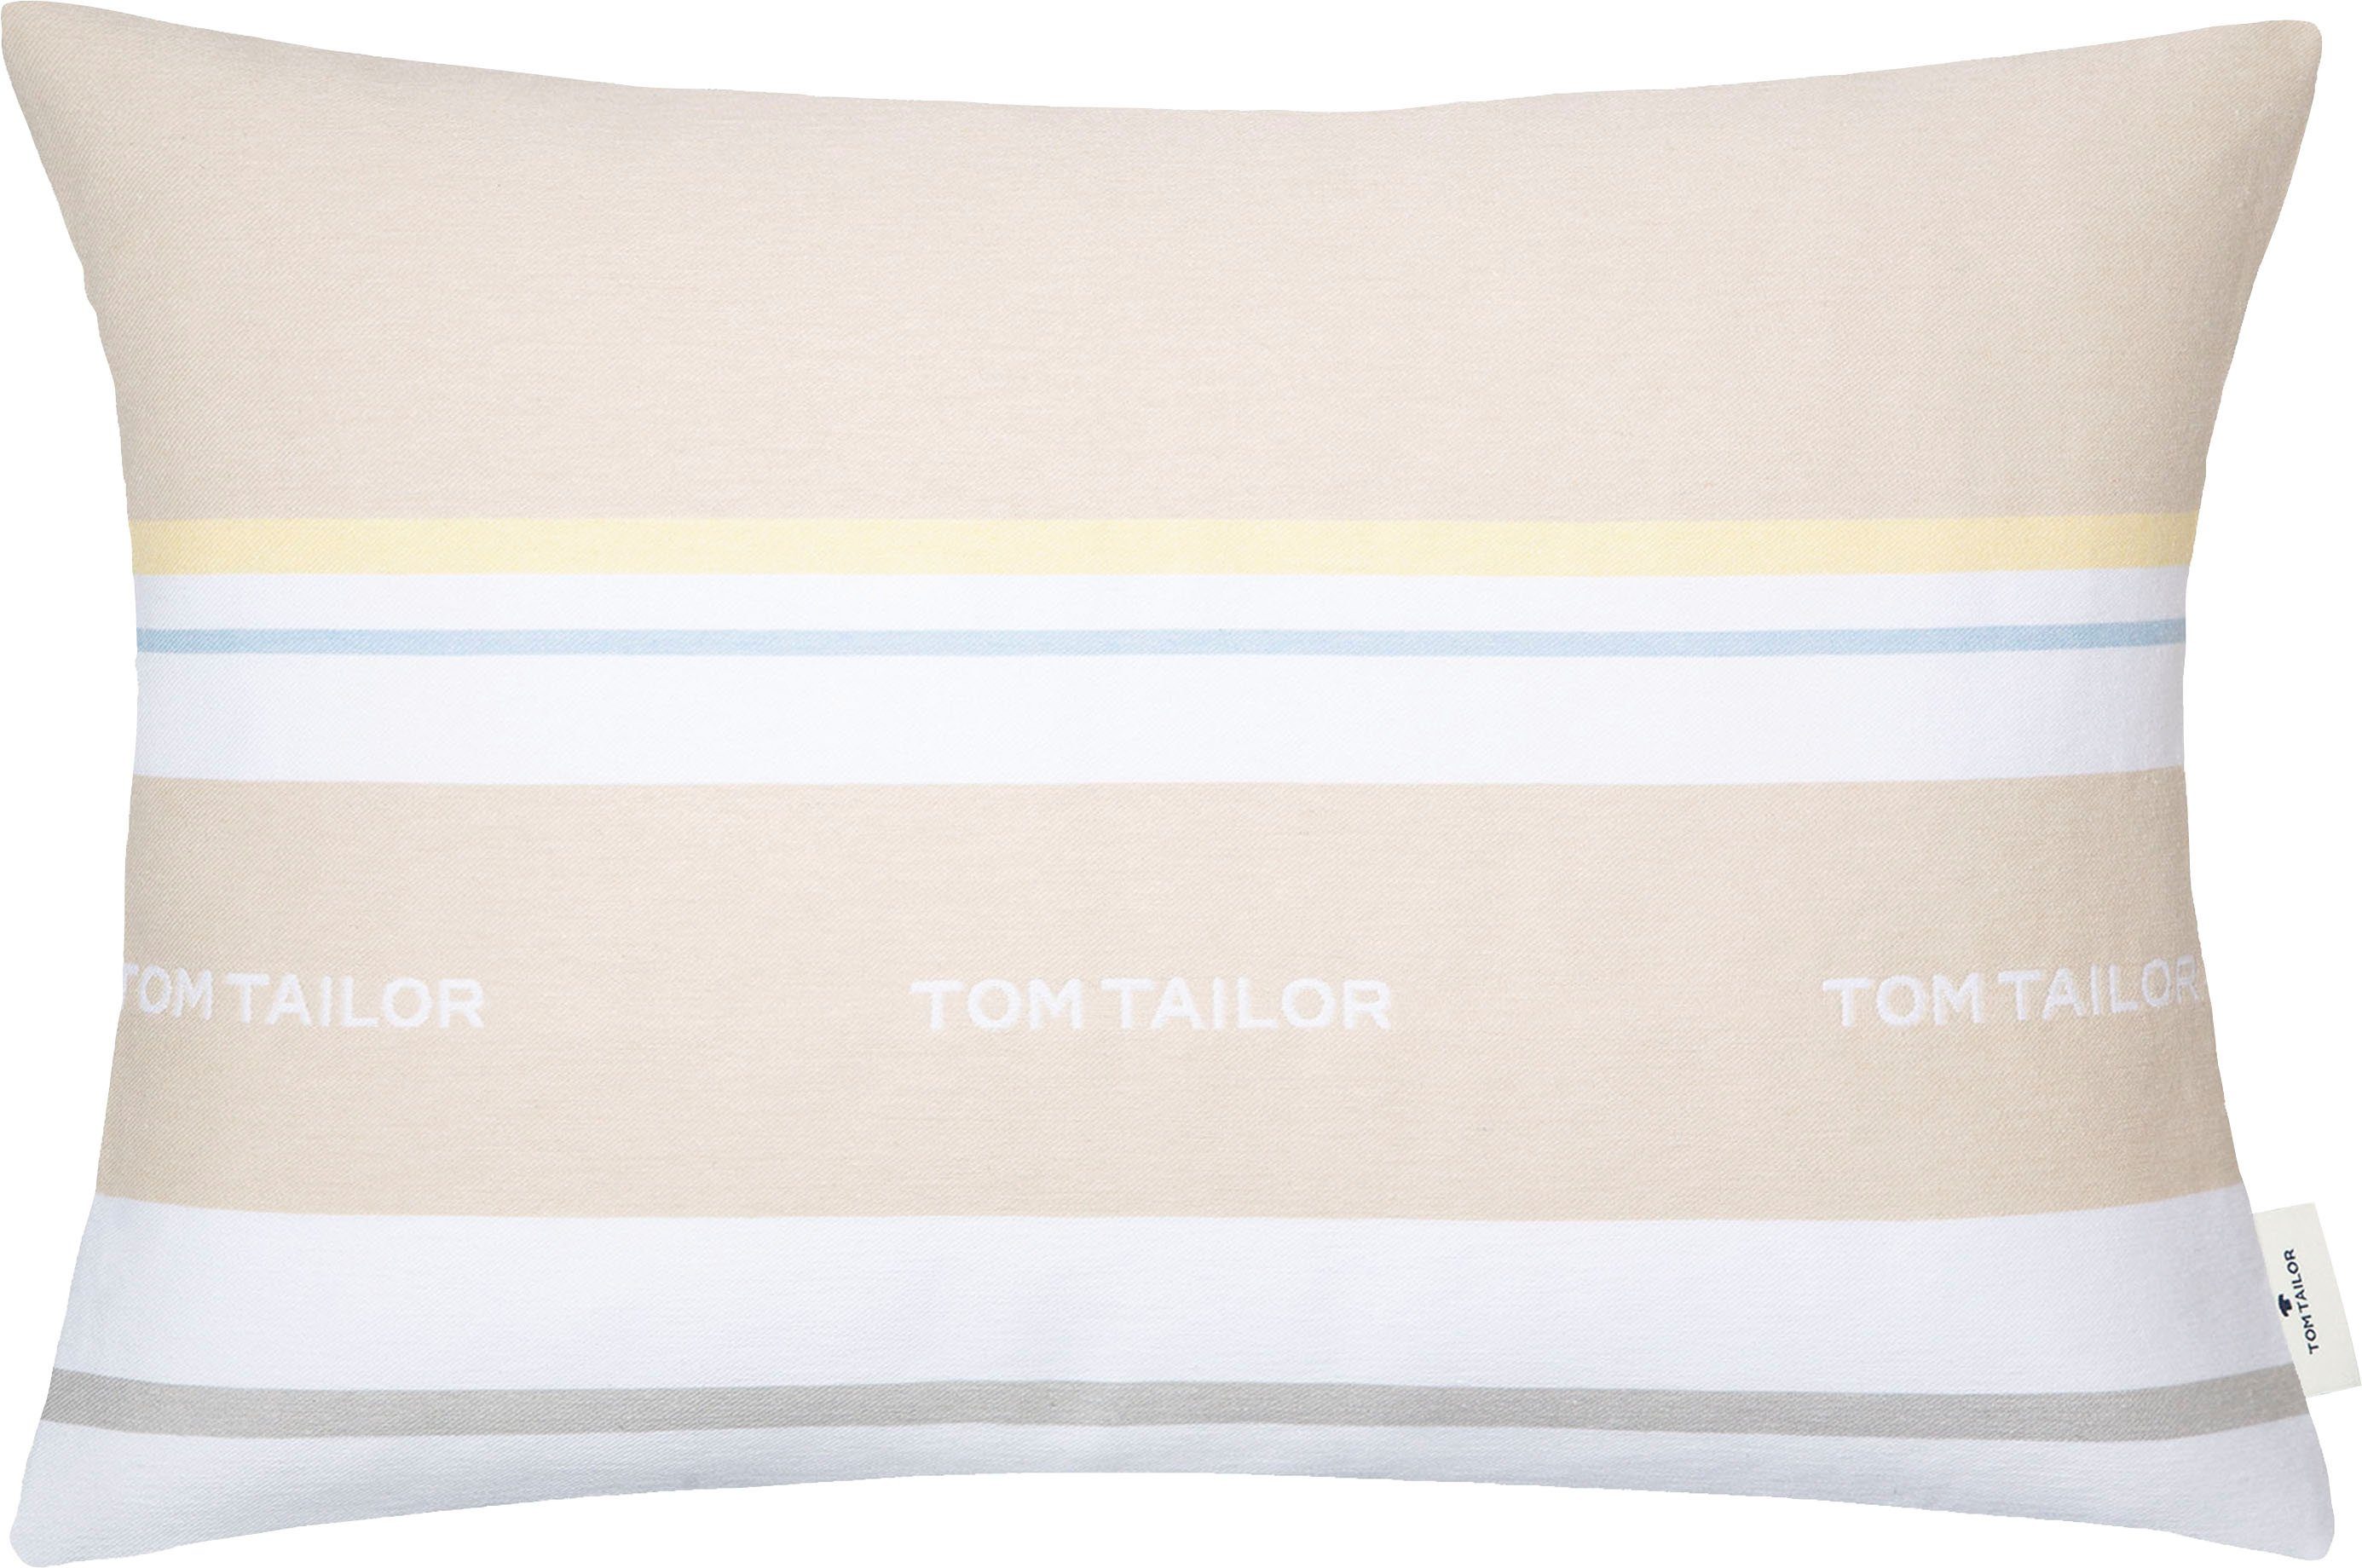 TOM TAILOR HOME Dekokissen Logo, mit eingewebtem Markenlogo, Kissenhülle  ohne Füllung, 1 Stück, Aus atmungsaktiver und weicher Baumwolle